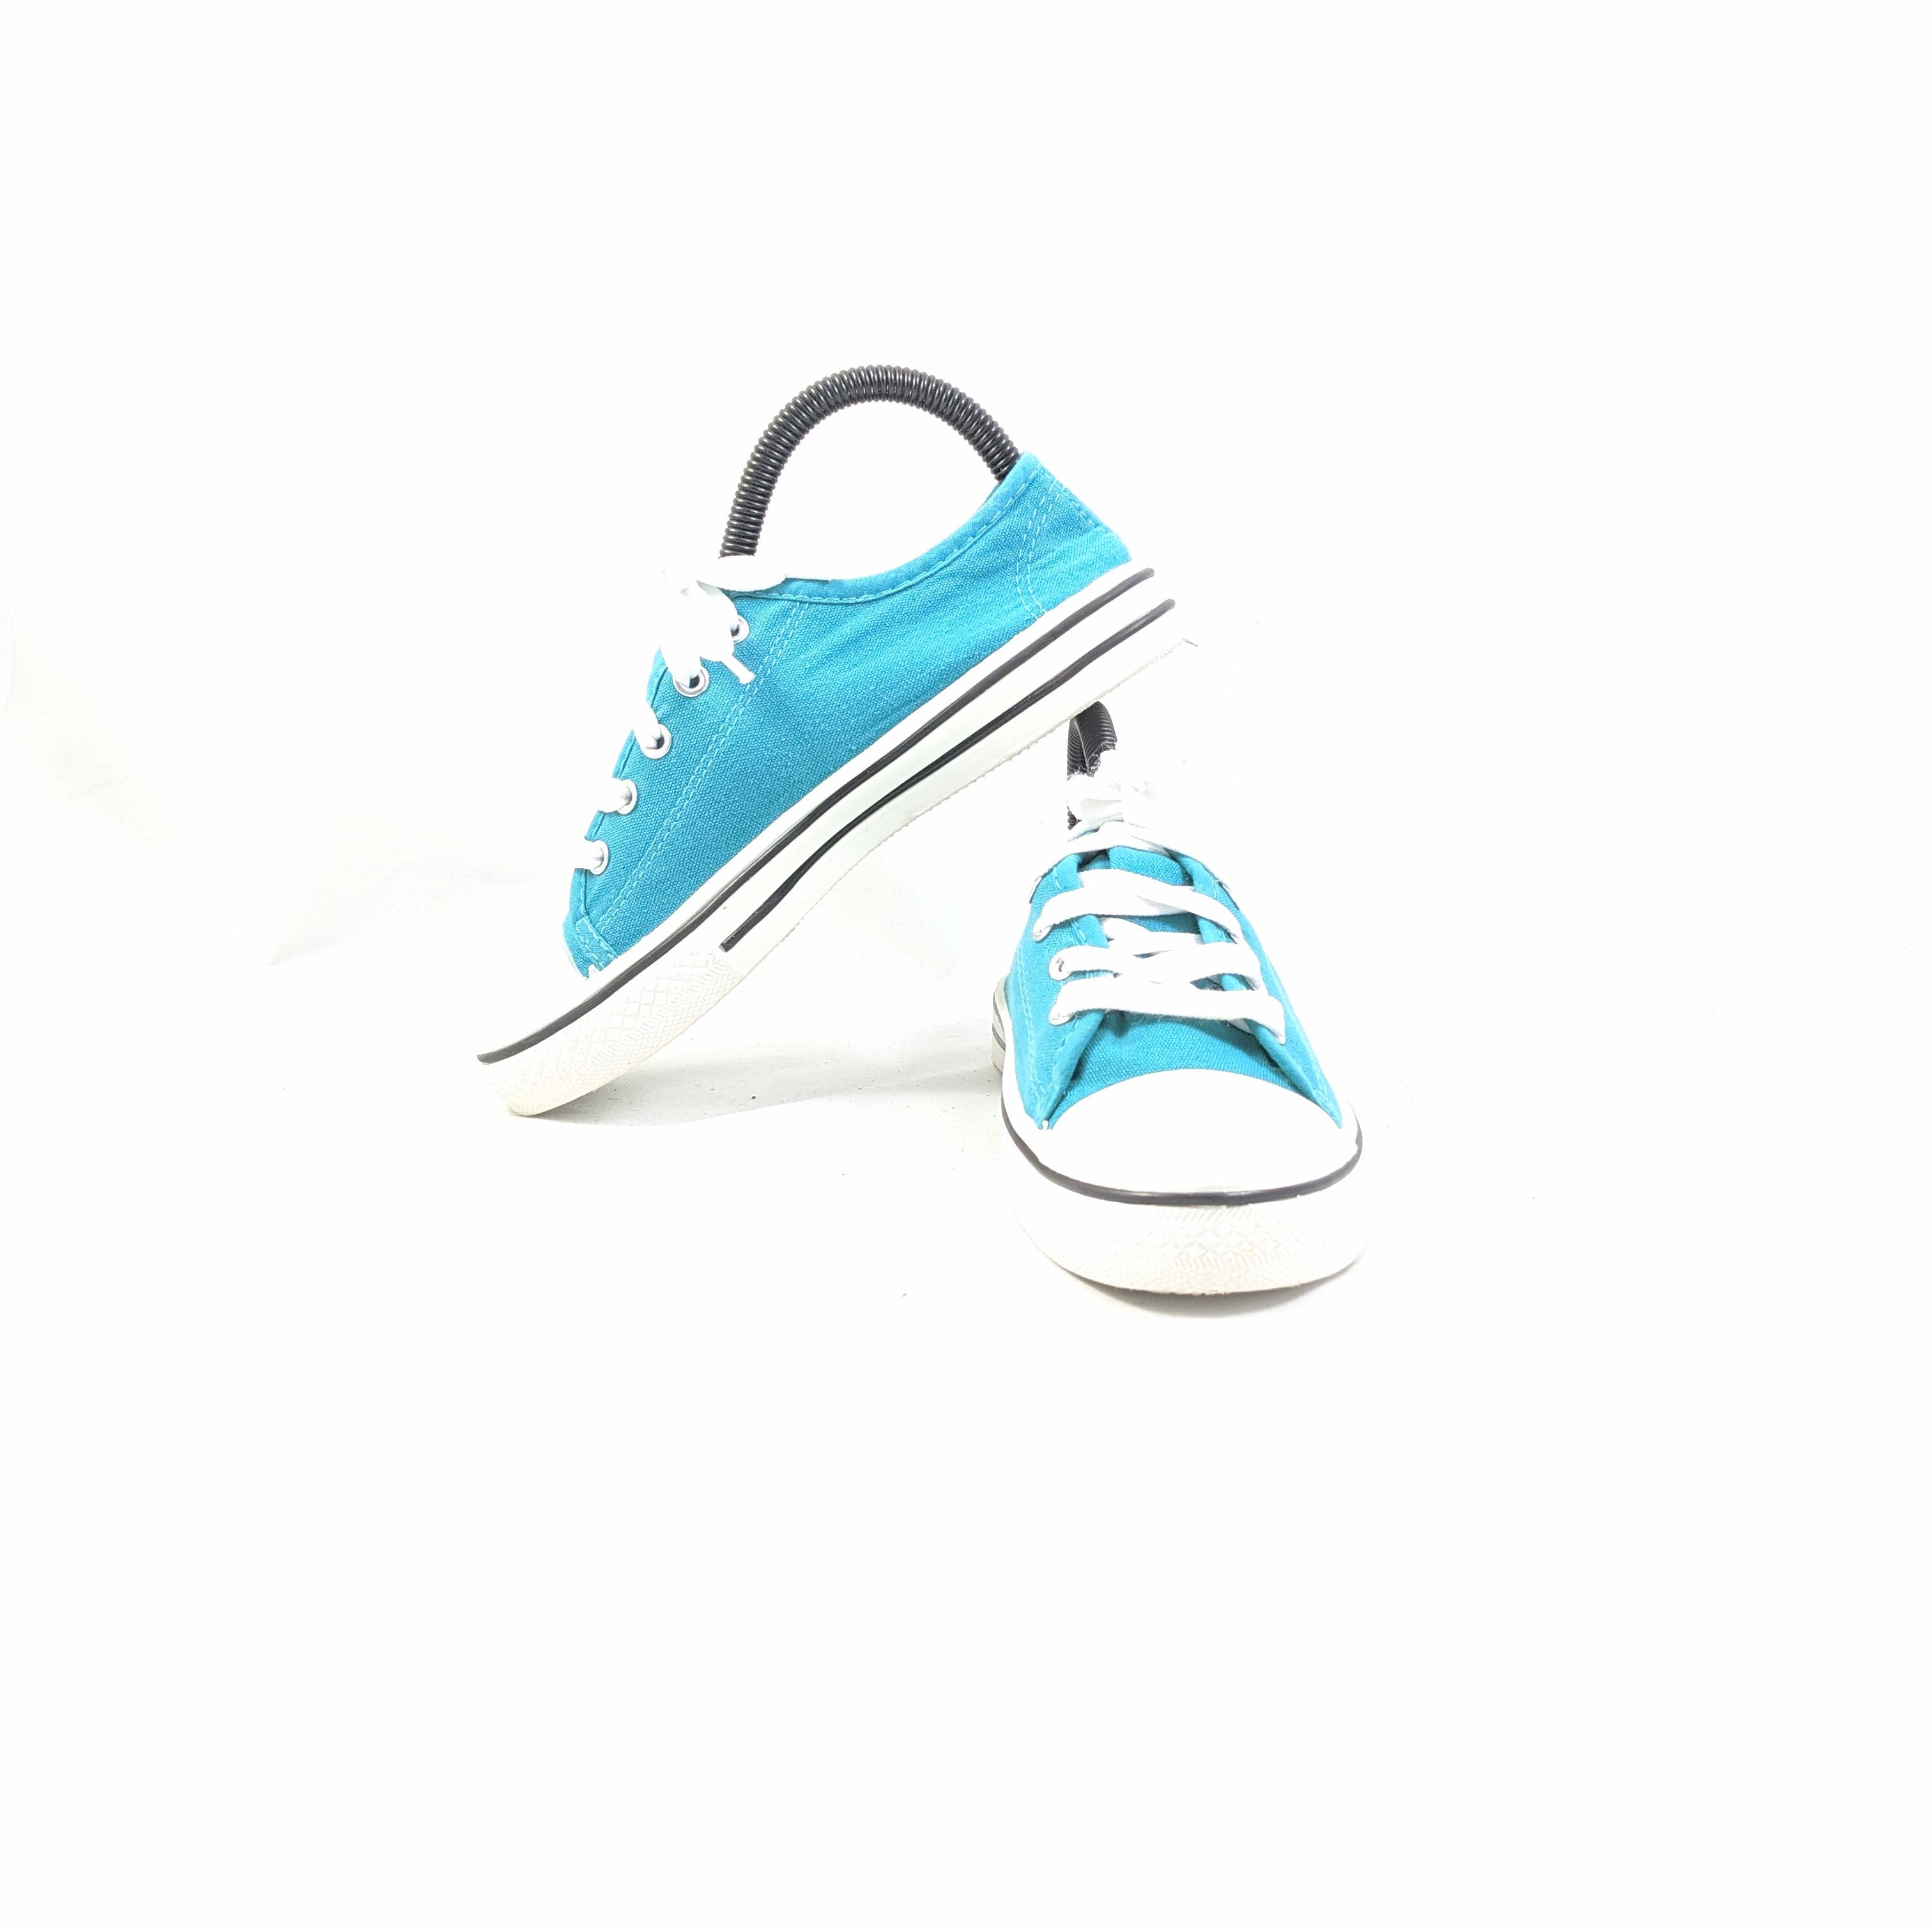 Blue Sneakers Premium C